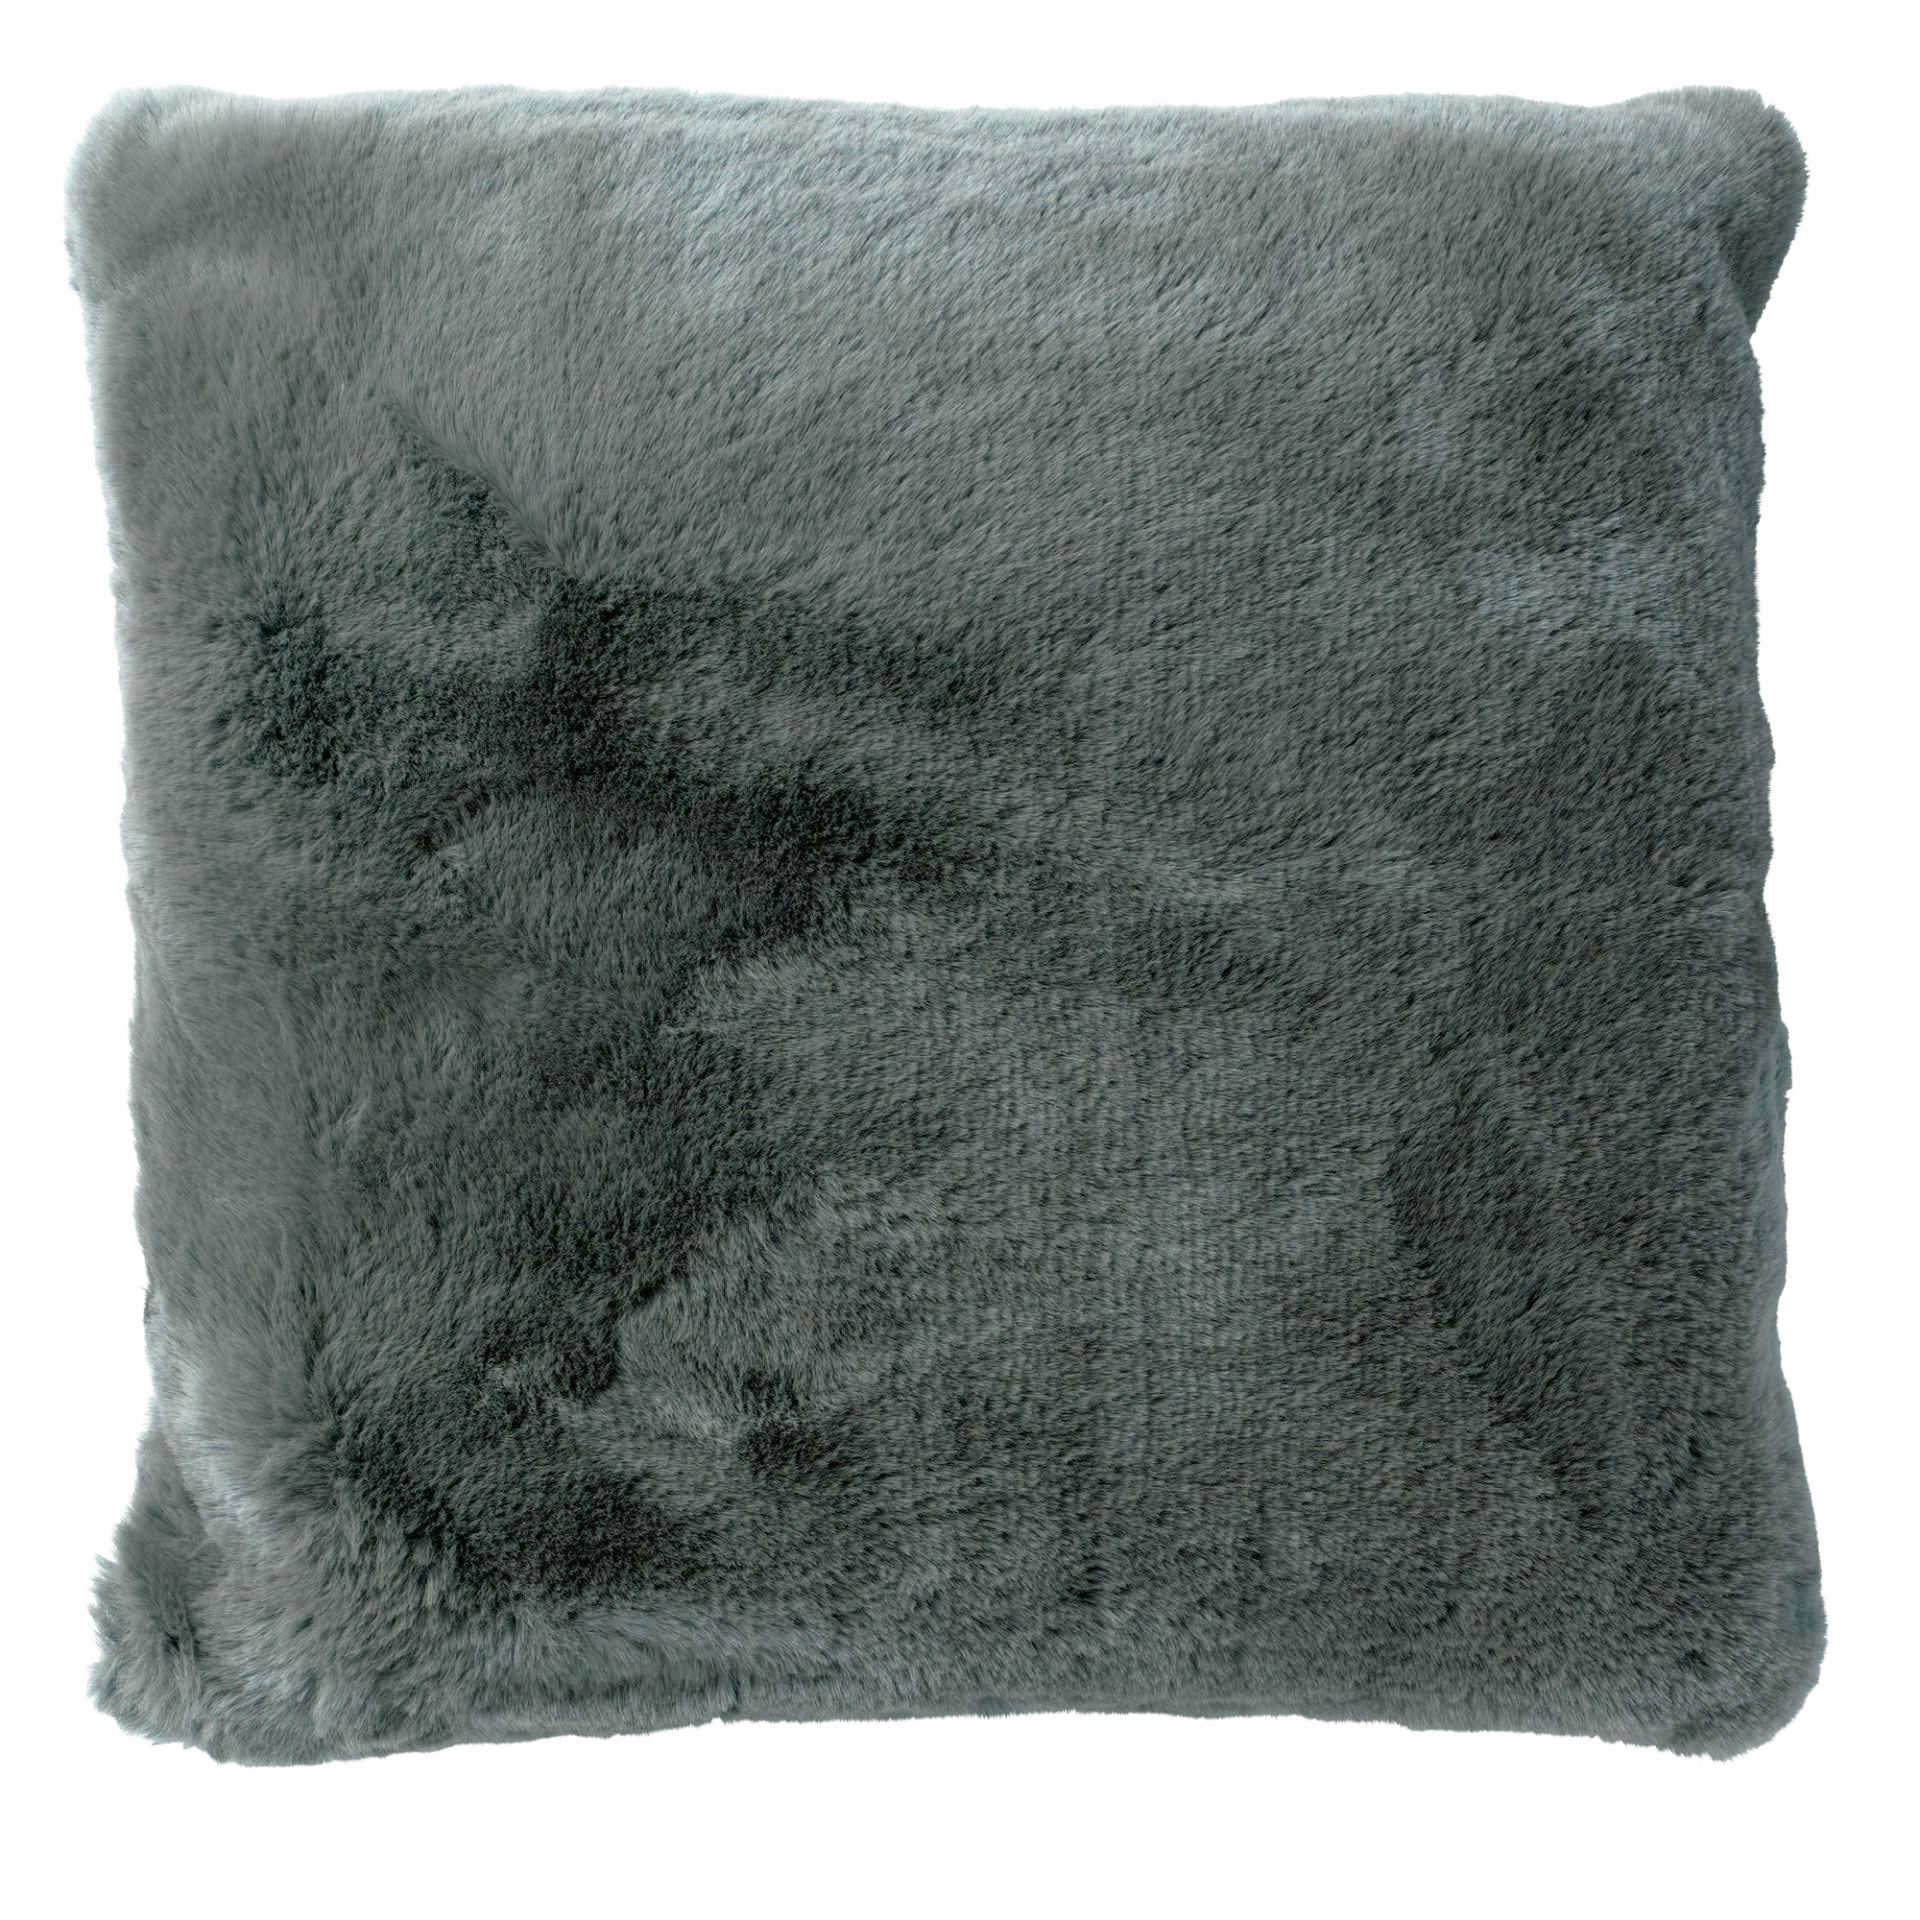 ZAYA - Kussenhoes 45x45 cm - bontlook - effen kleur - Charcoal Gray - antraciet